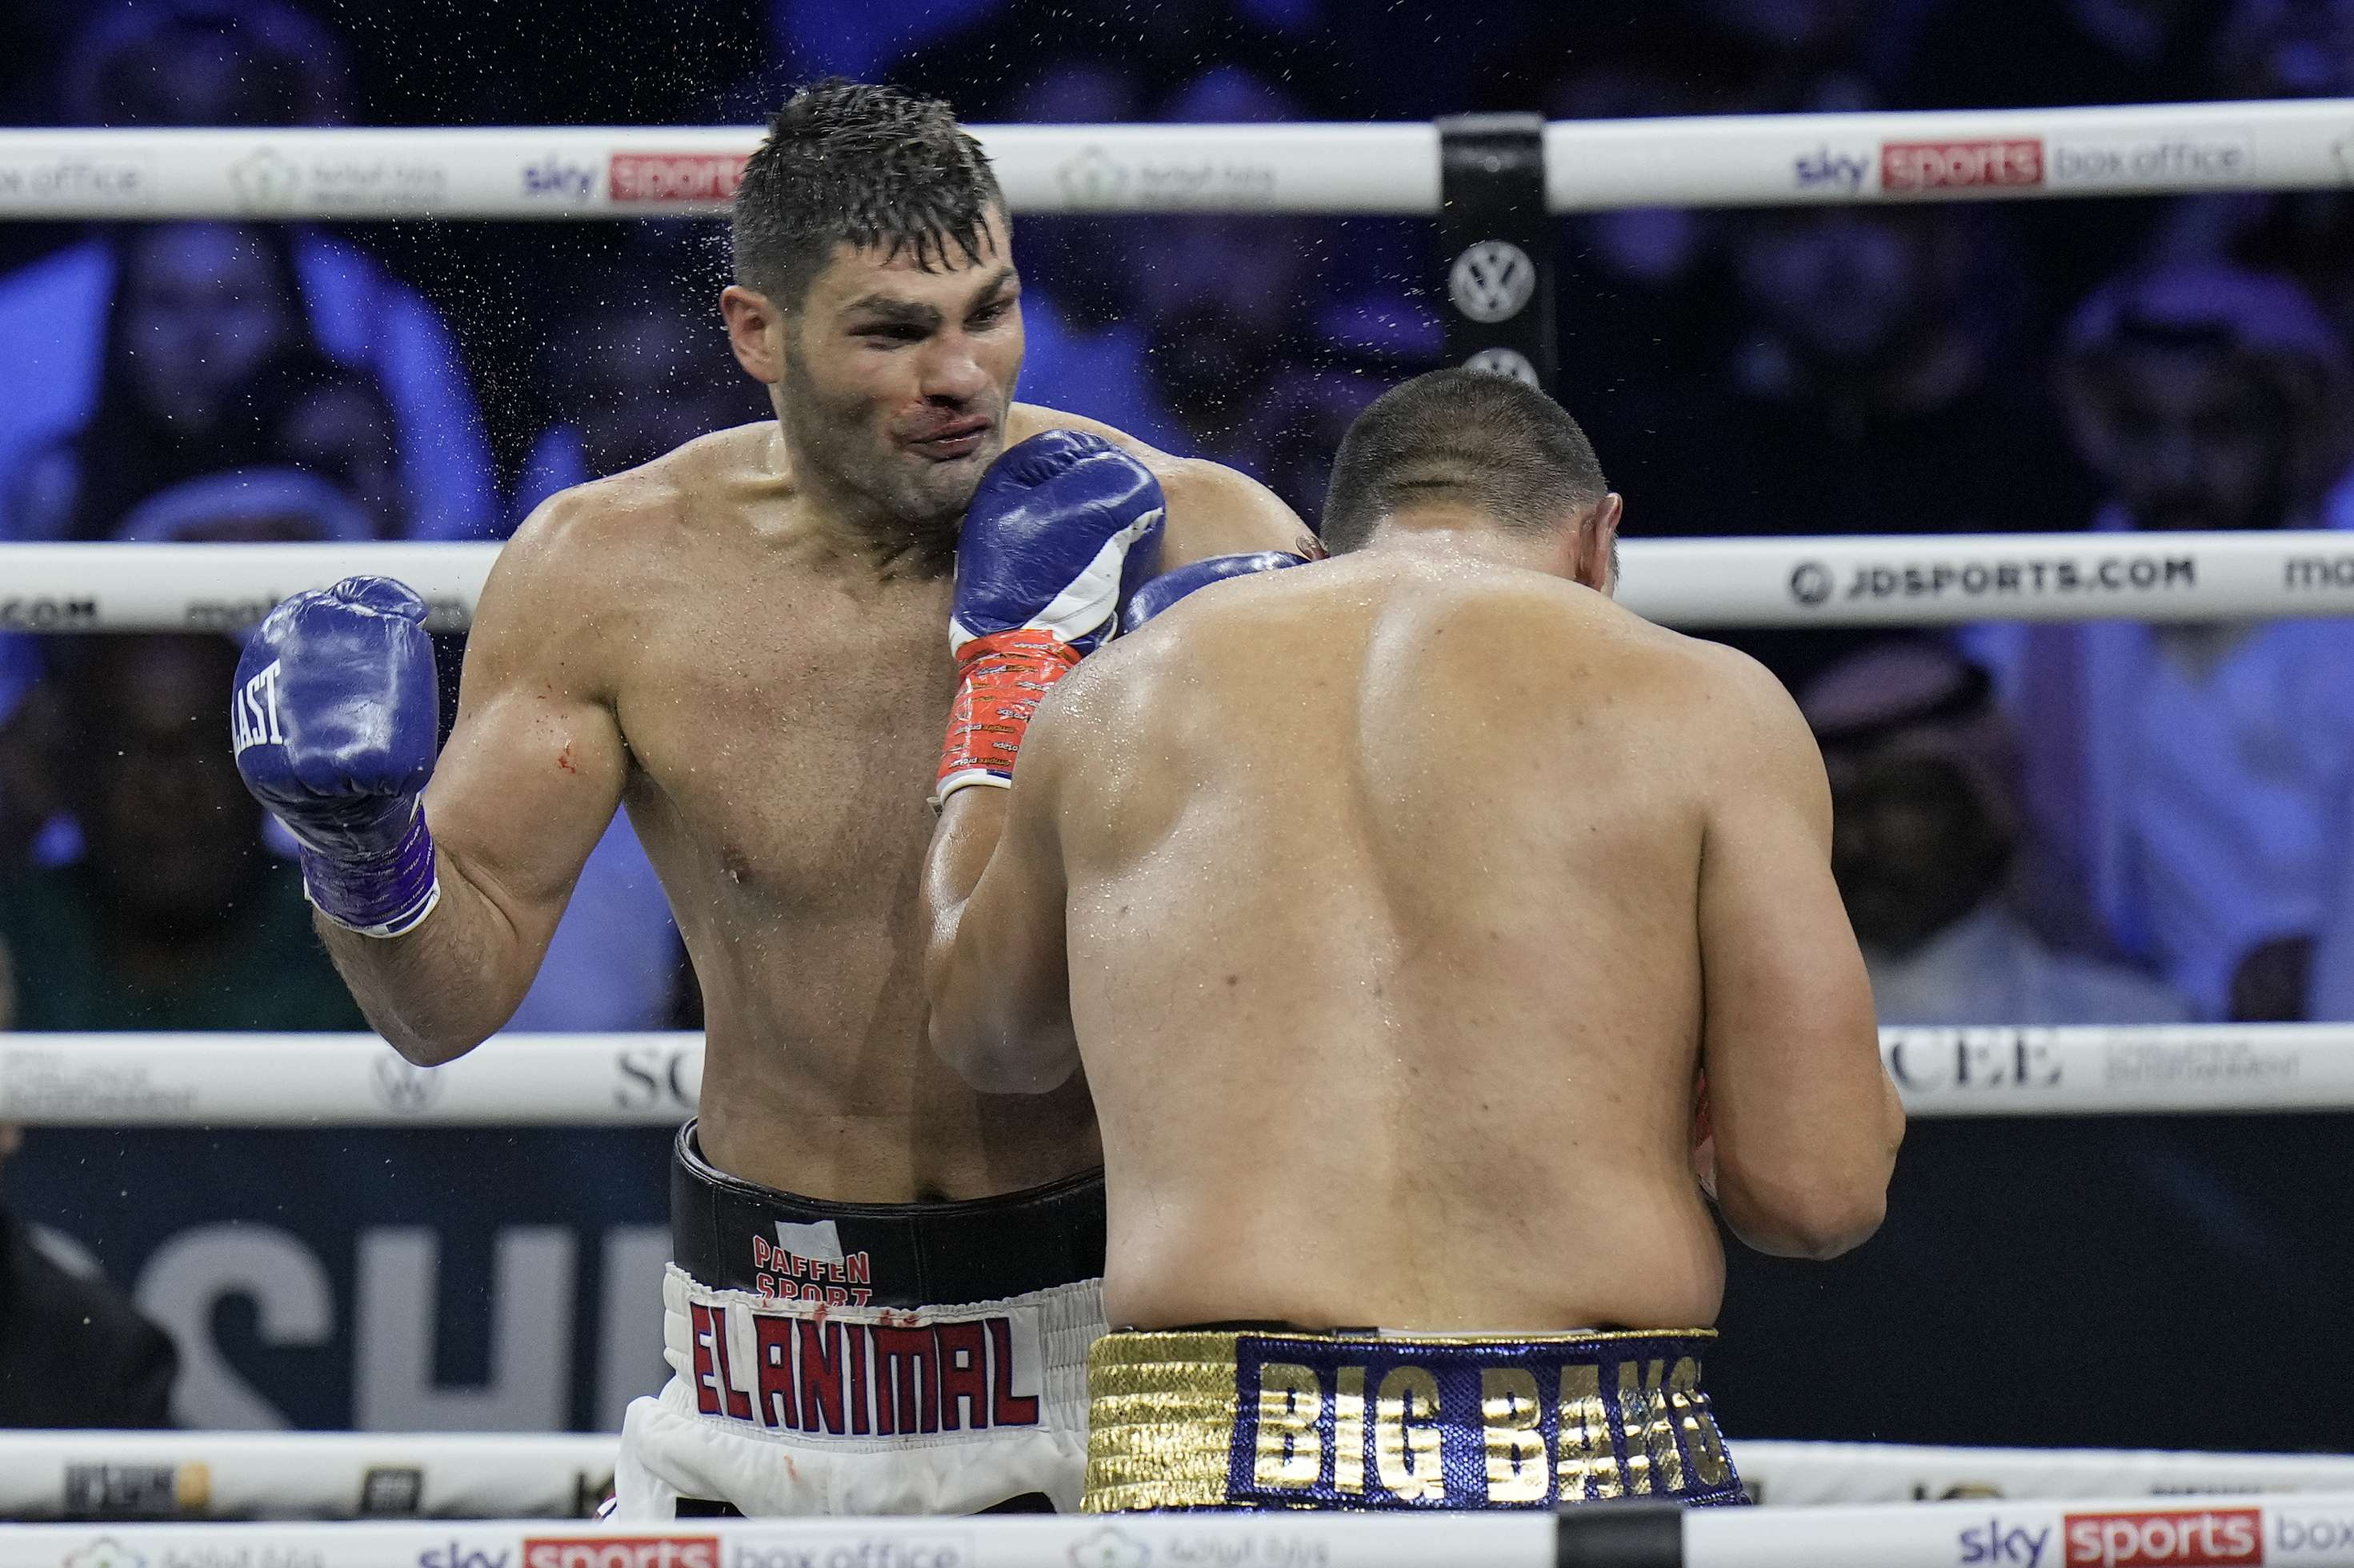 Der Kroate Hrgović besiegt Zhile und gewinnt das Recht, um den Weltmeistertitel im Schwergewicht zu boxen